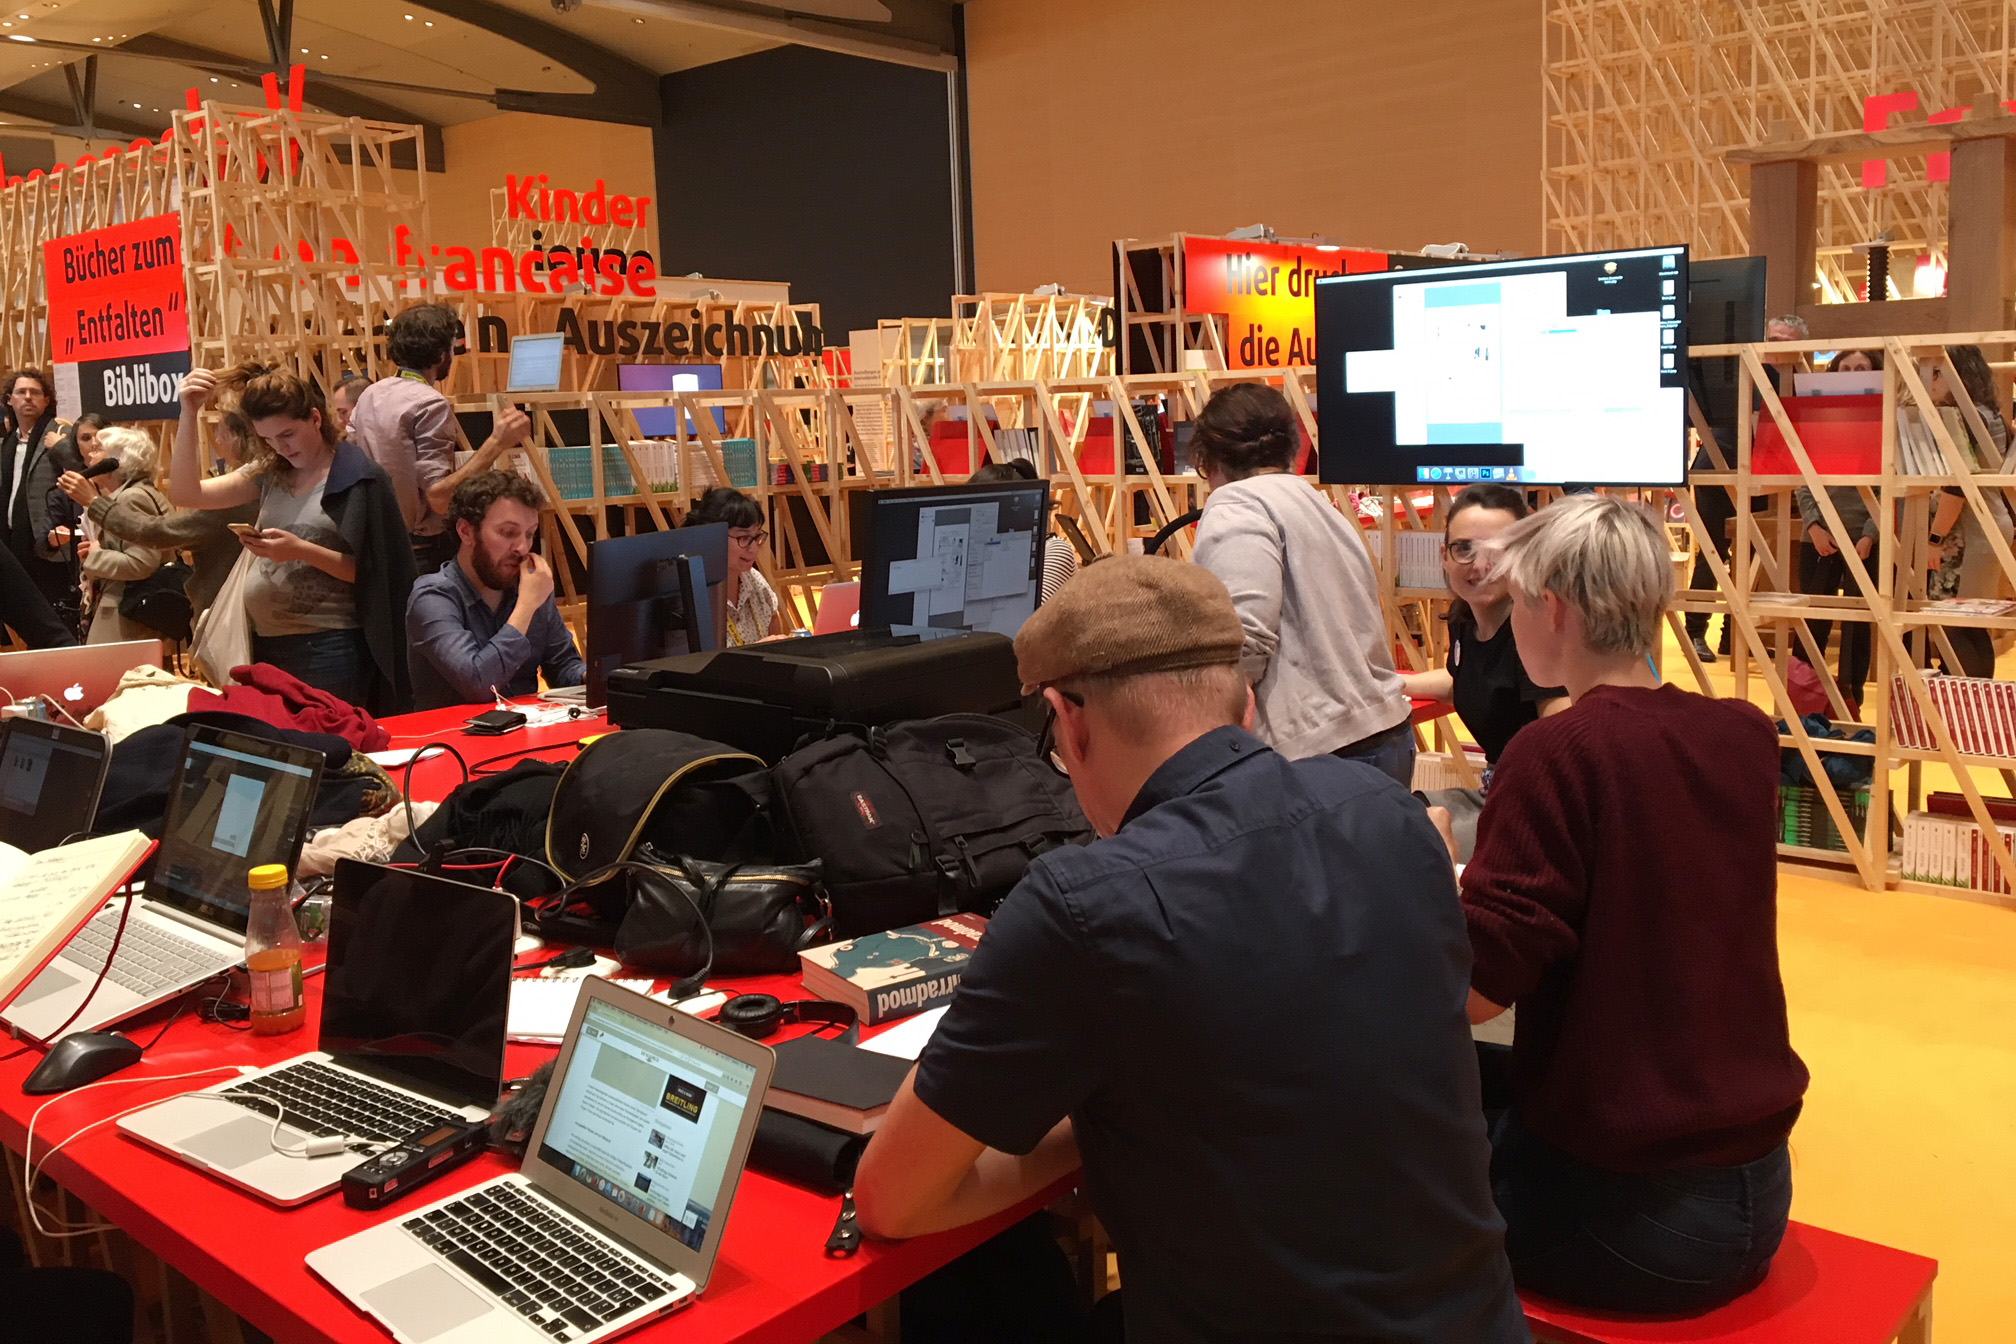 Mehrere Personen sitzen vor Laptops und Monitoren im französischen Pavillon der Buchmesse Frankfurt.